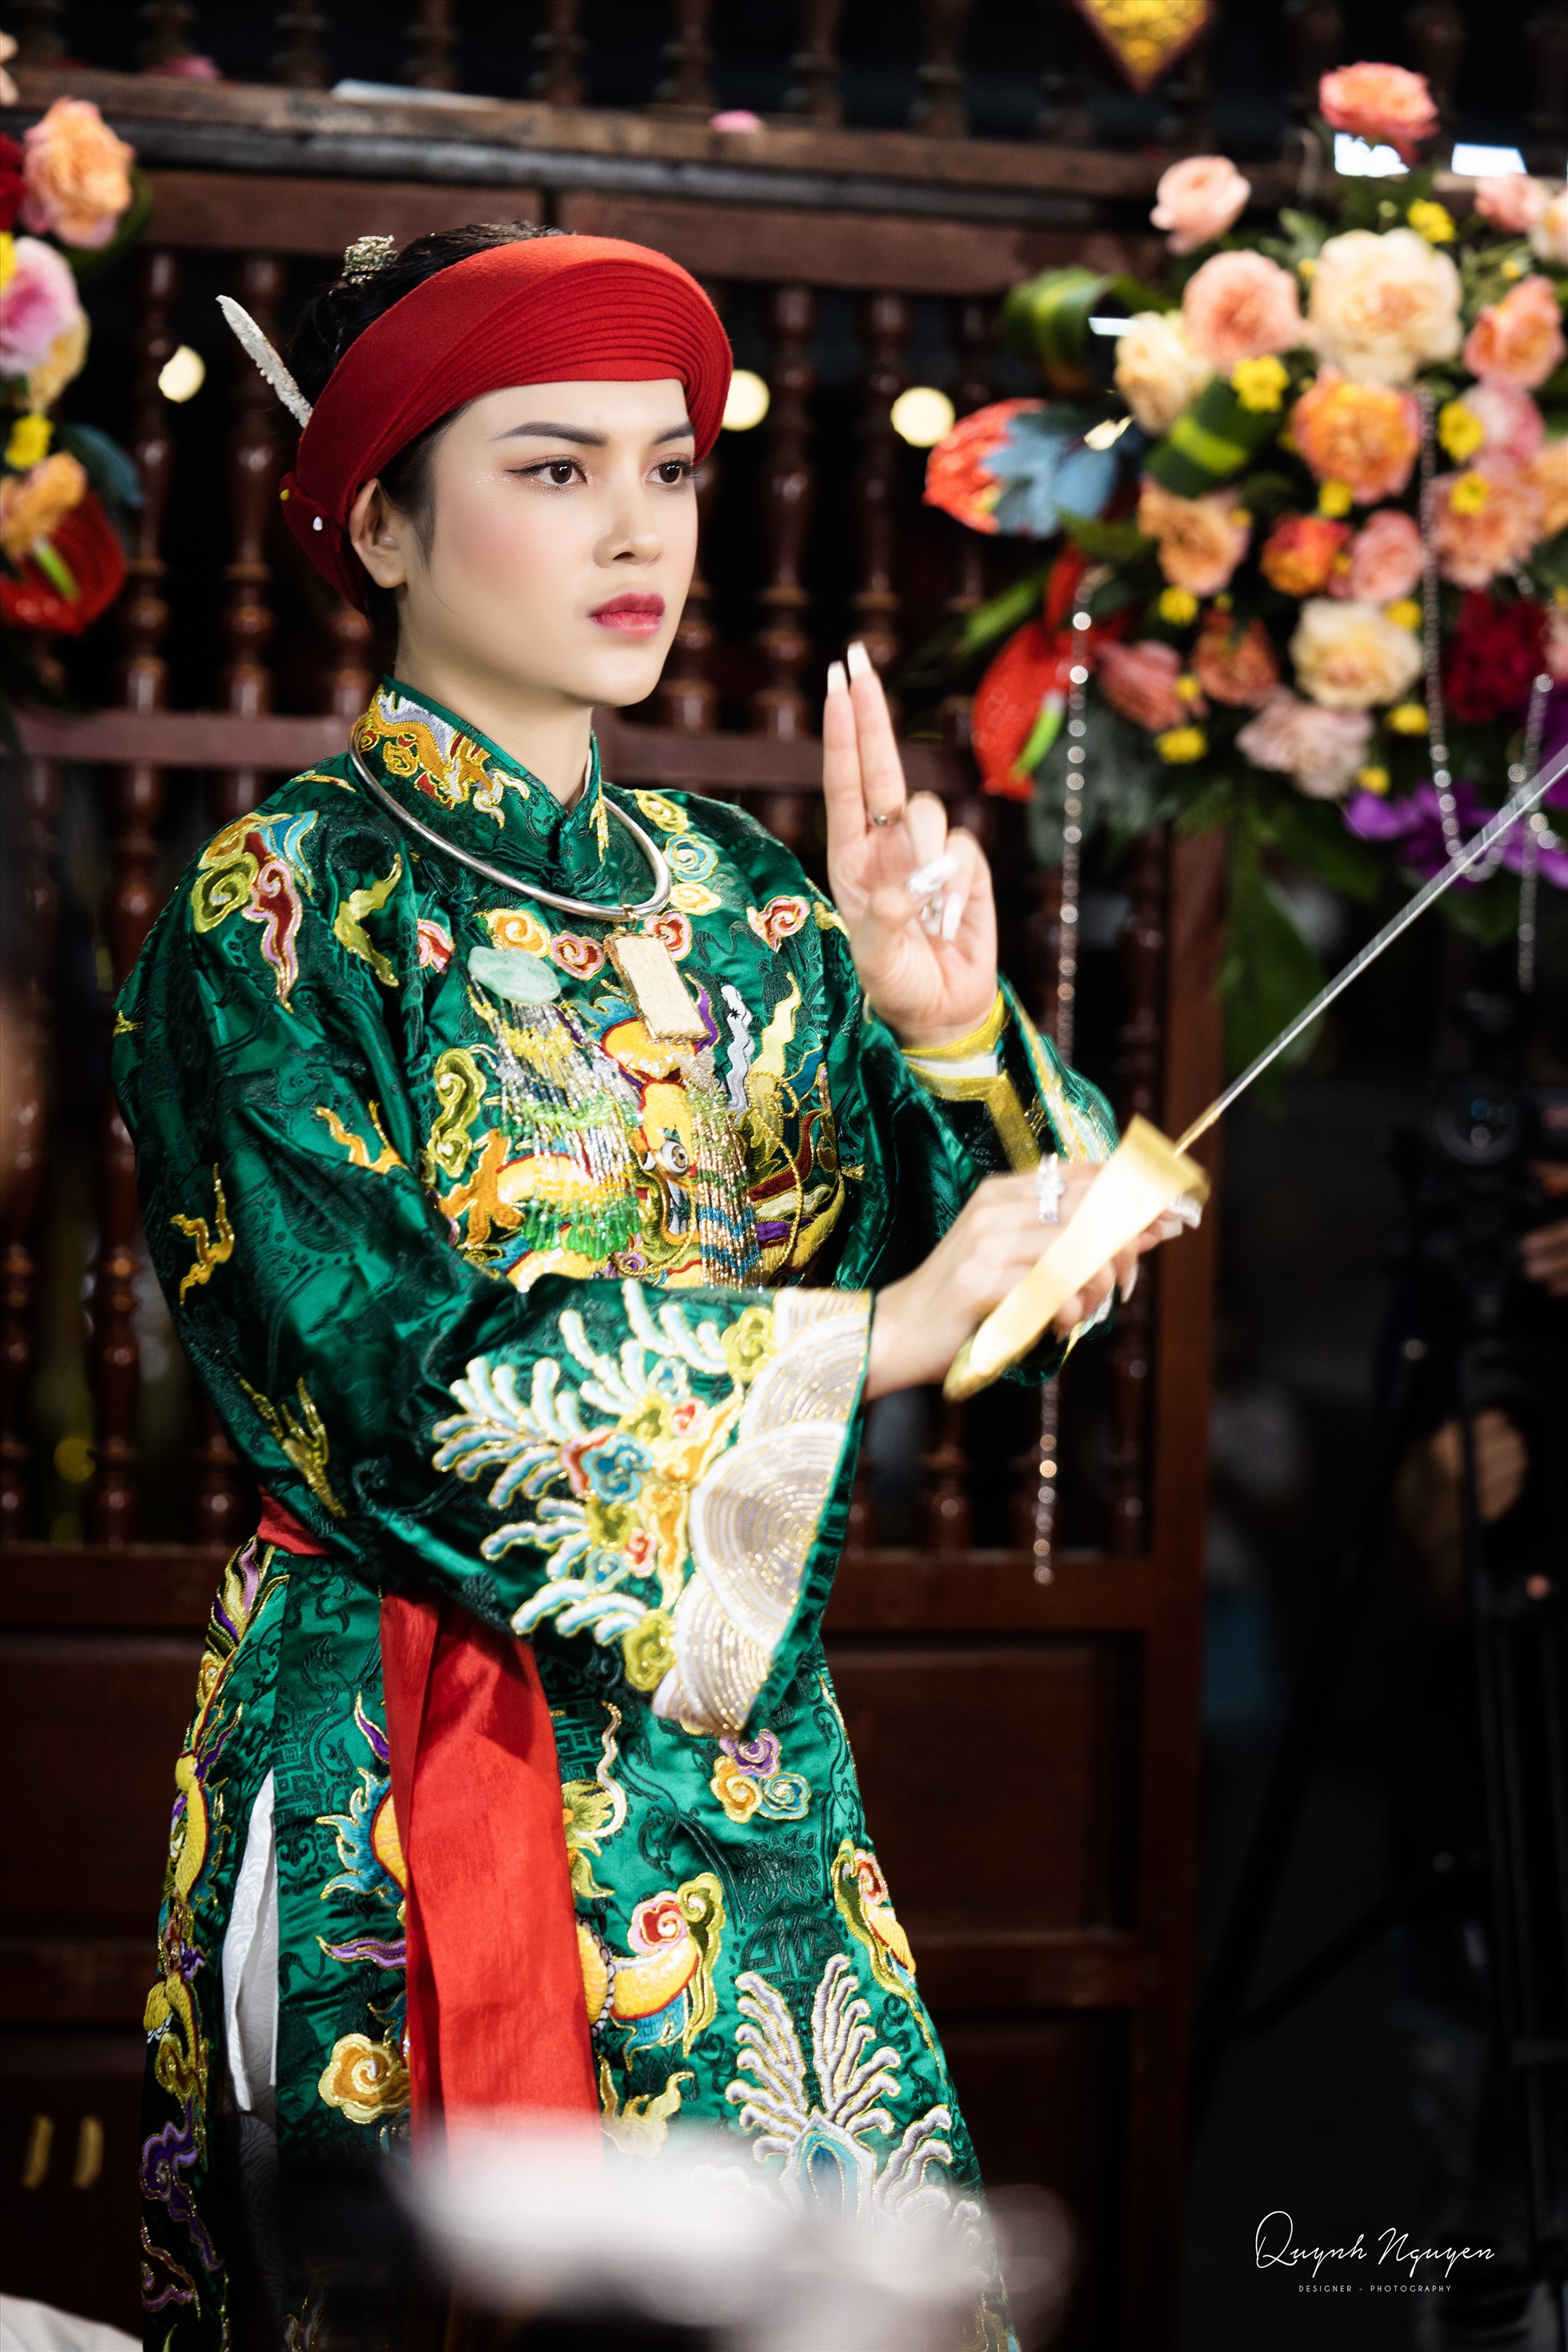 Trong album ảnh, nữ diễn viên lựa chọn những trang phục có màu sắc rực rỡ và mang đậm nét văn hoá truyền thống.